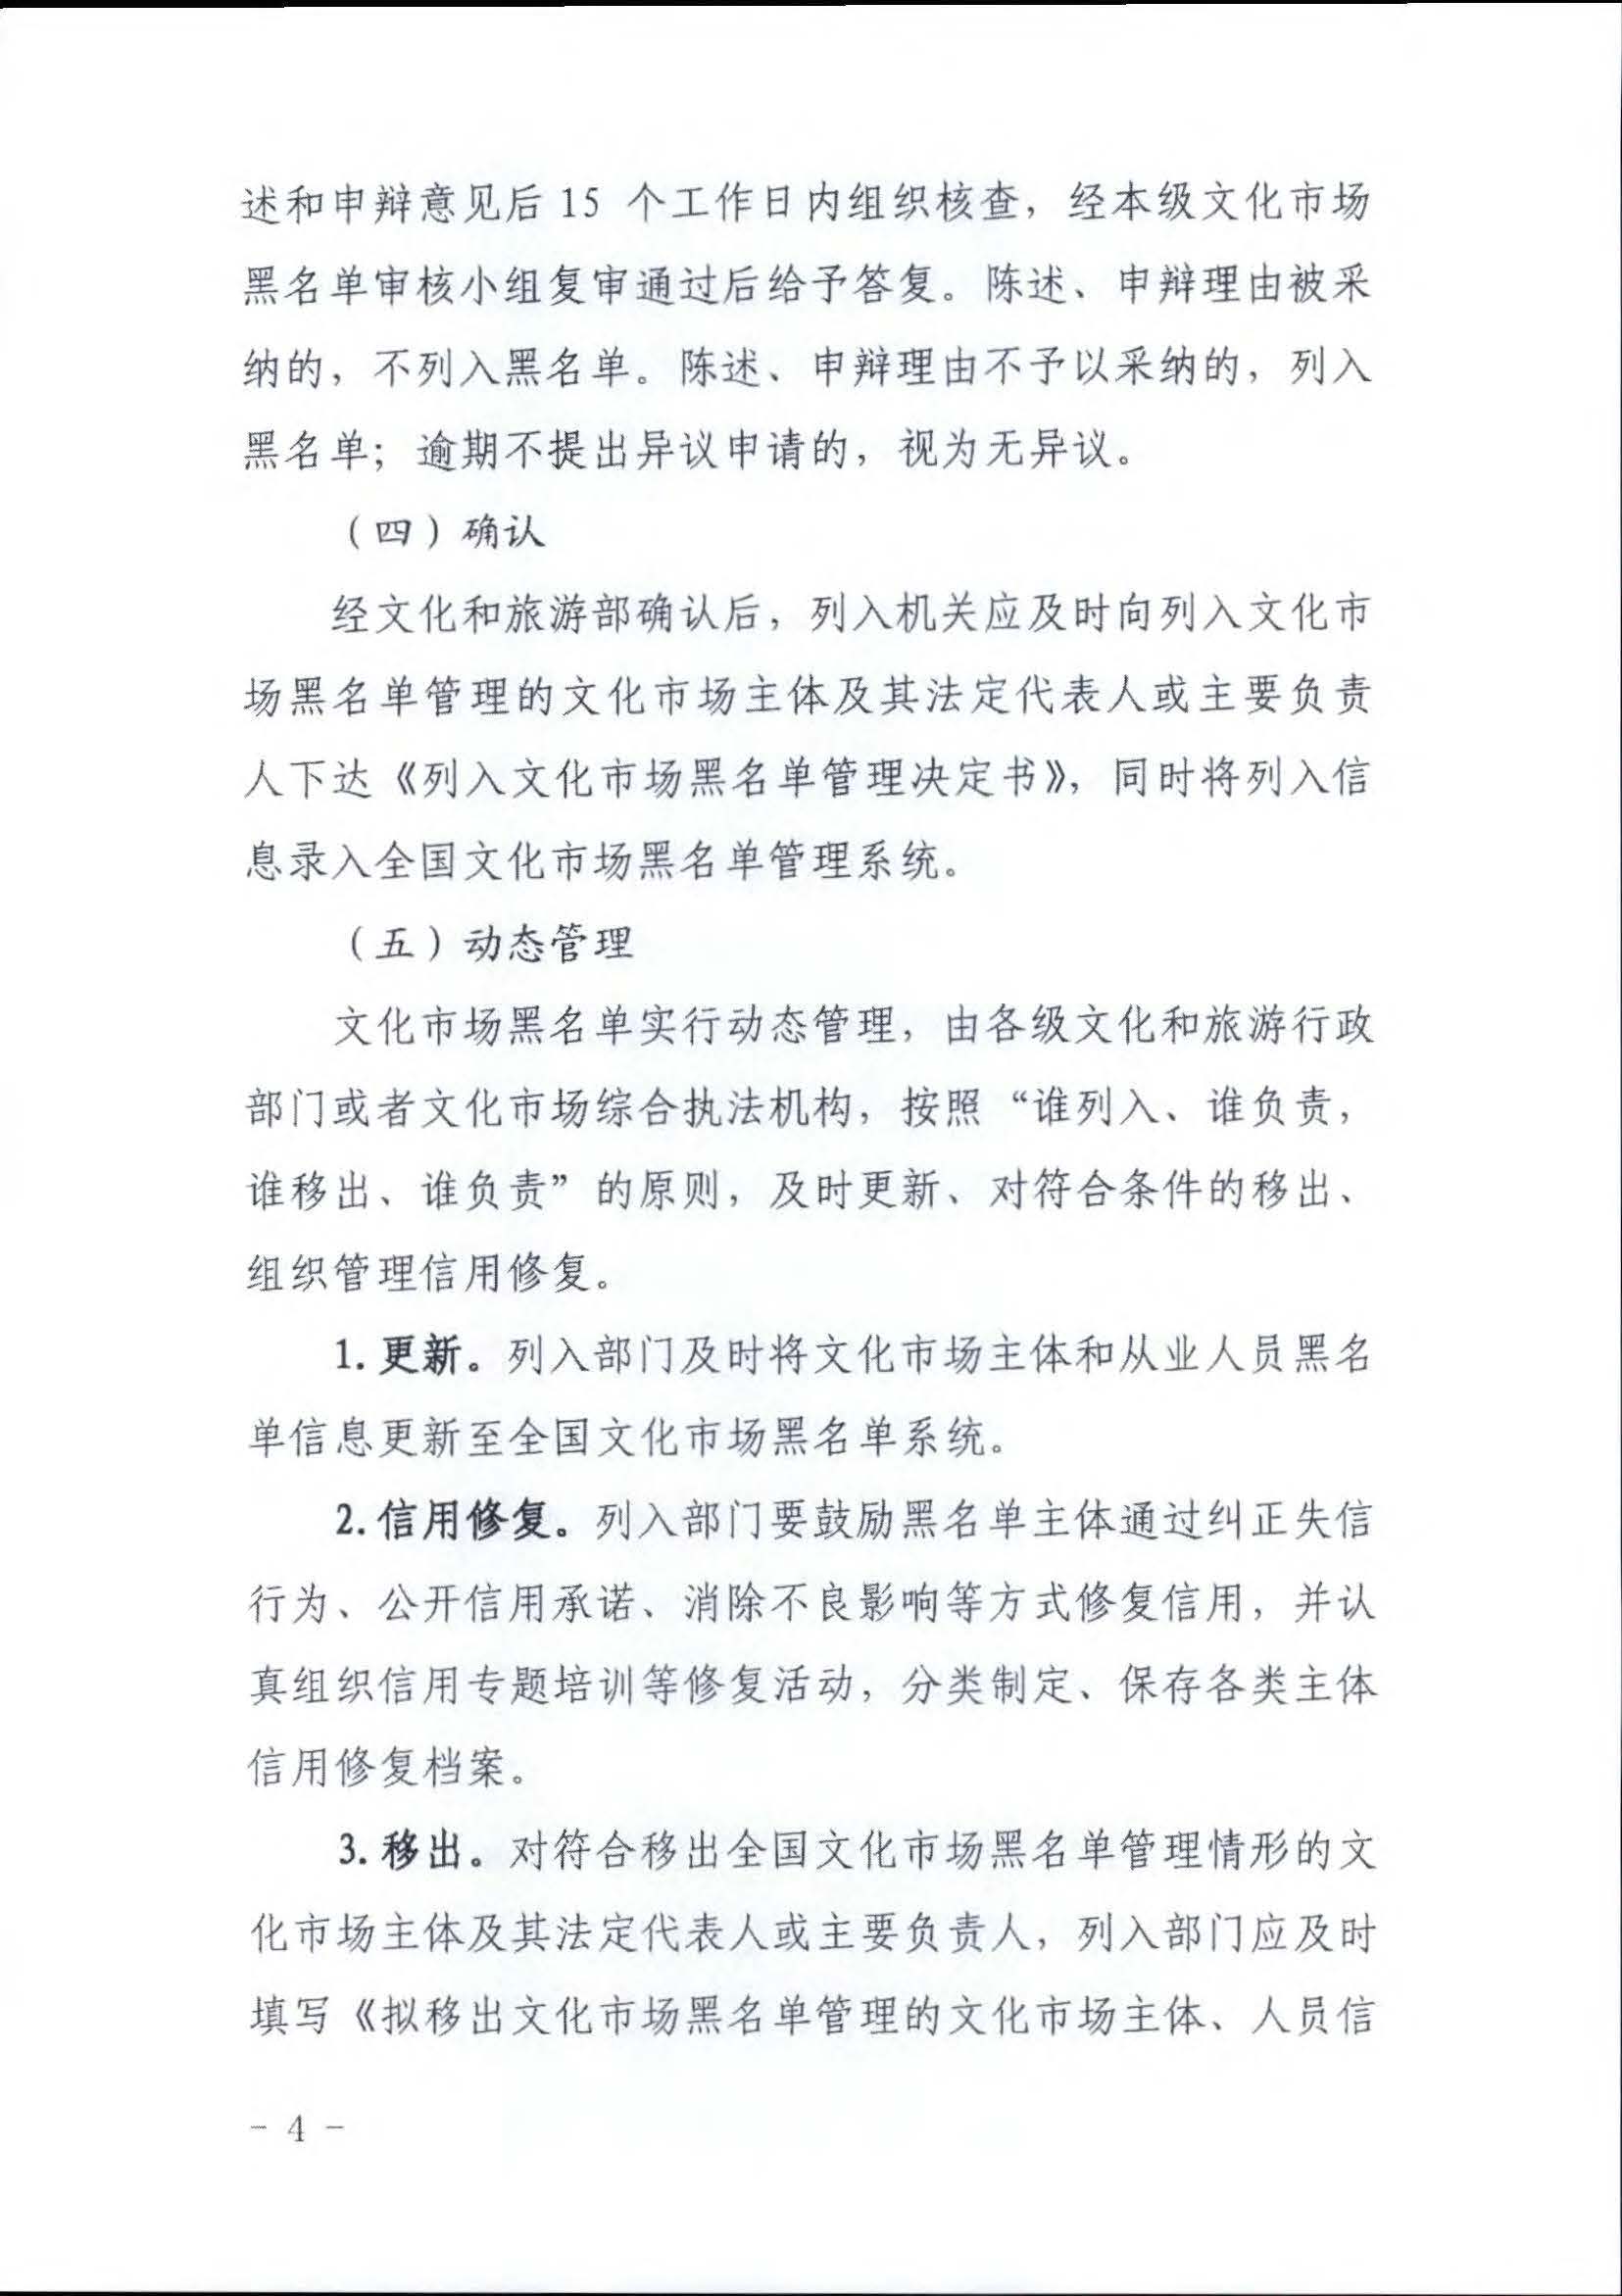 广东省文化和旅游厅关于推进文化和旅游市场信用修复工作的通知_页面_13.jpg